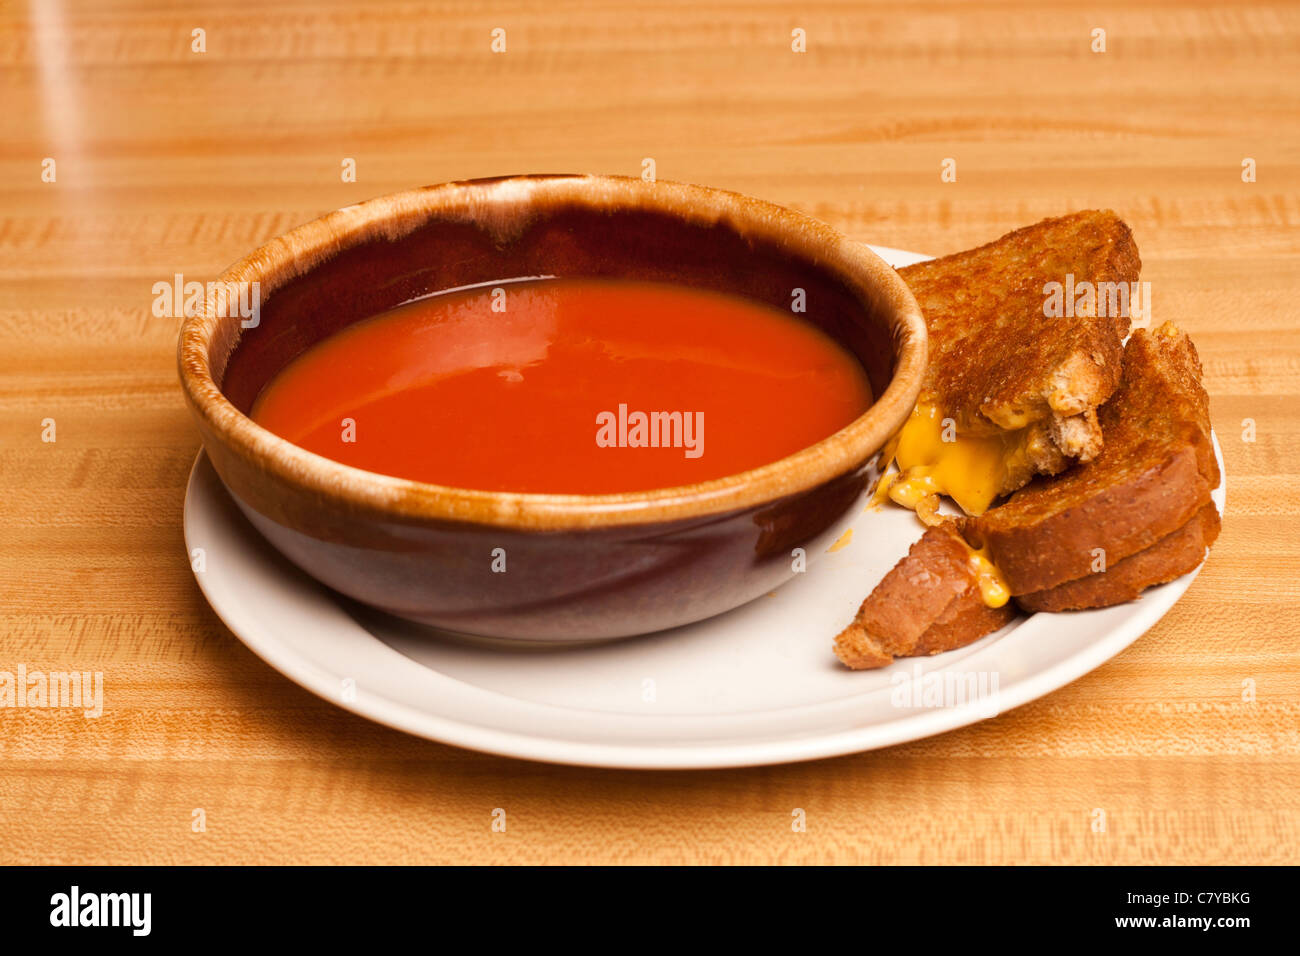 Soupe de tomate le partage d'une plaque avec un sandwich au fromage grillé Banque D'Images